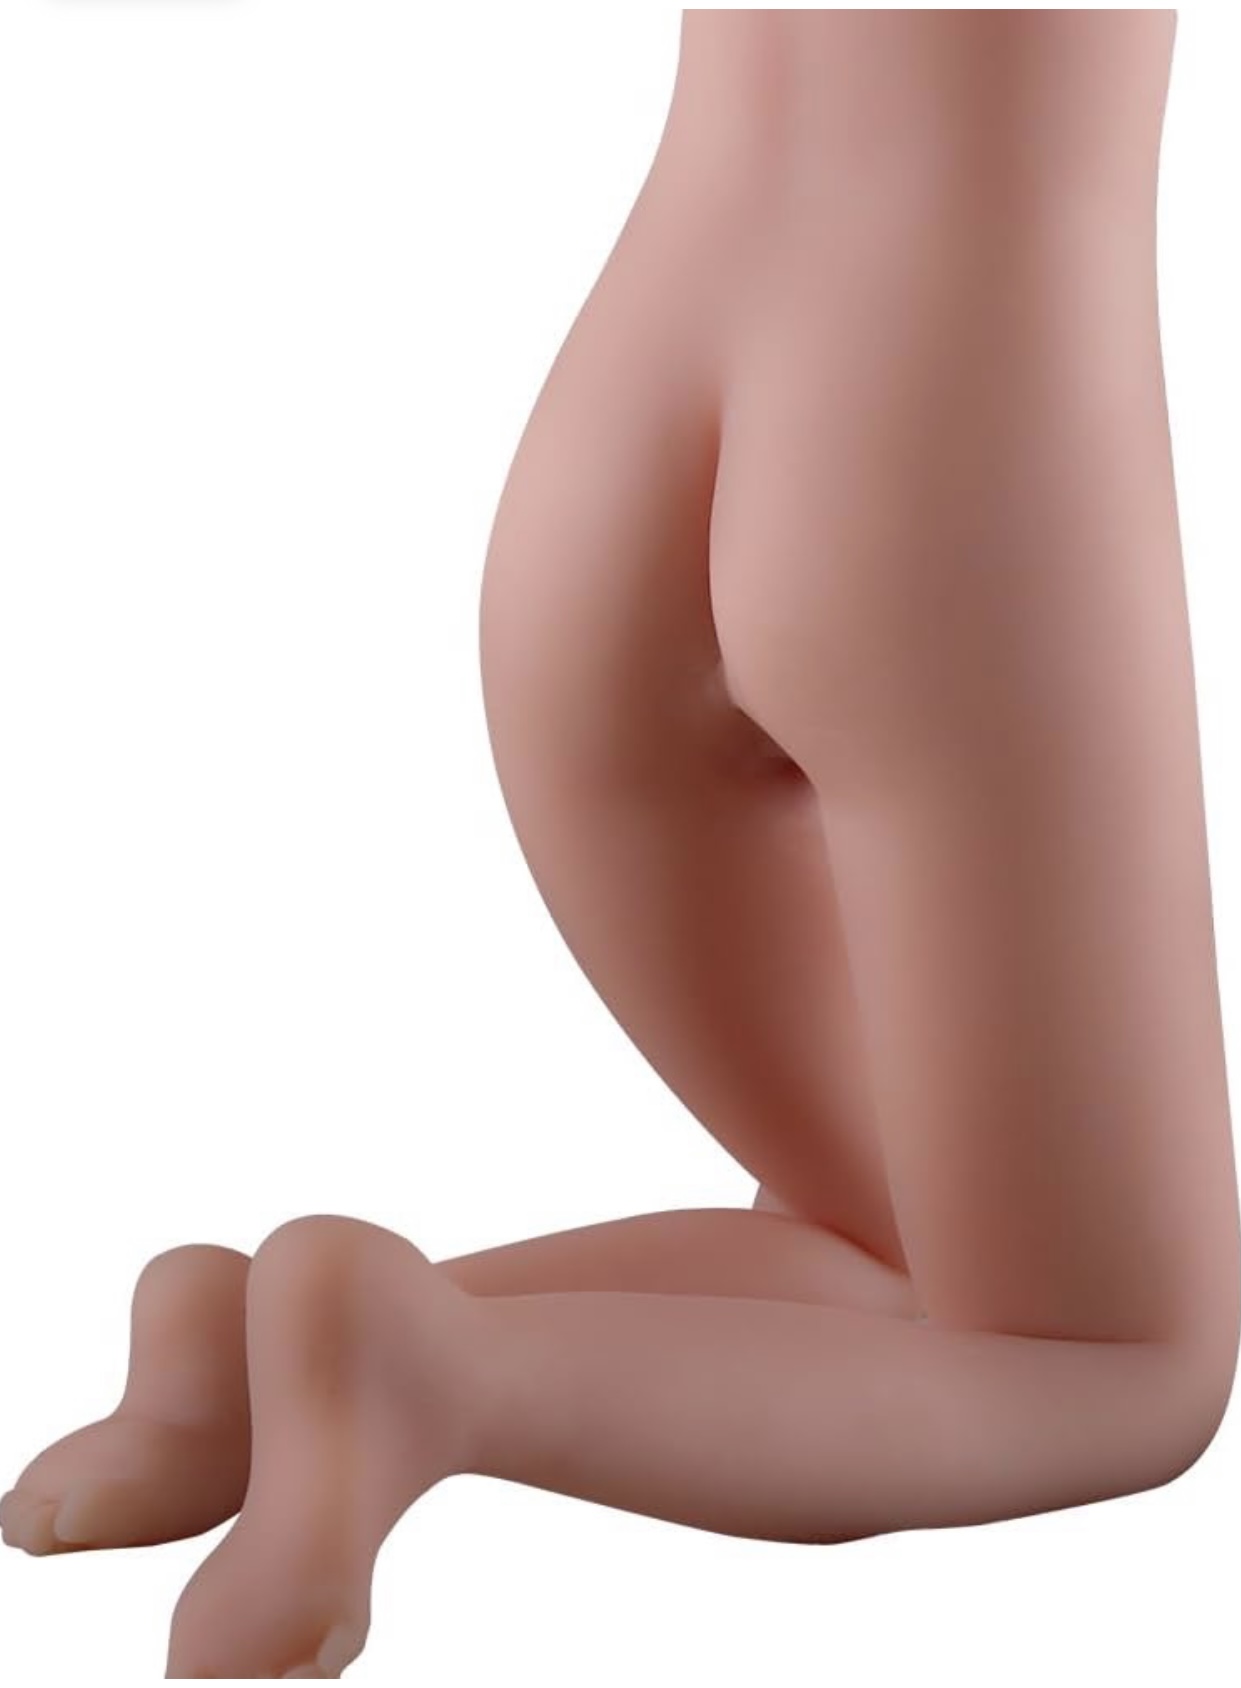 Sỉ Búp bê tình dục nửa thân dưới có chân silicon nguyên khối giá rẻ hàng xách tay